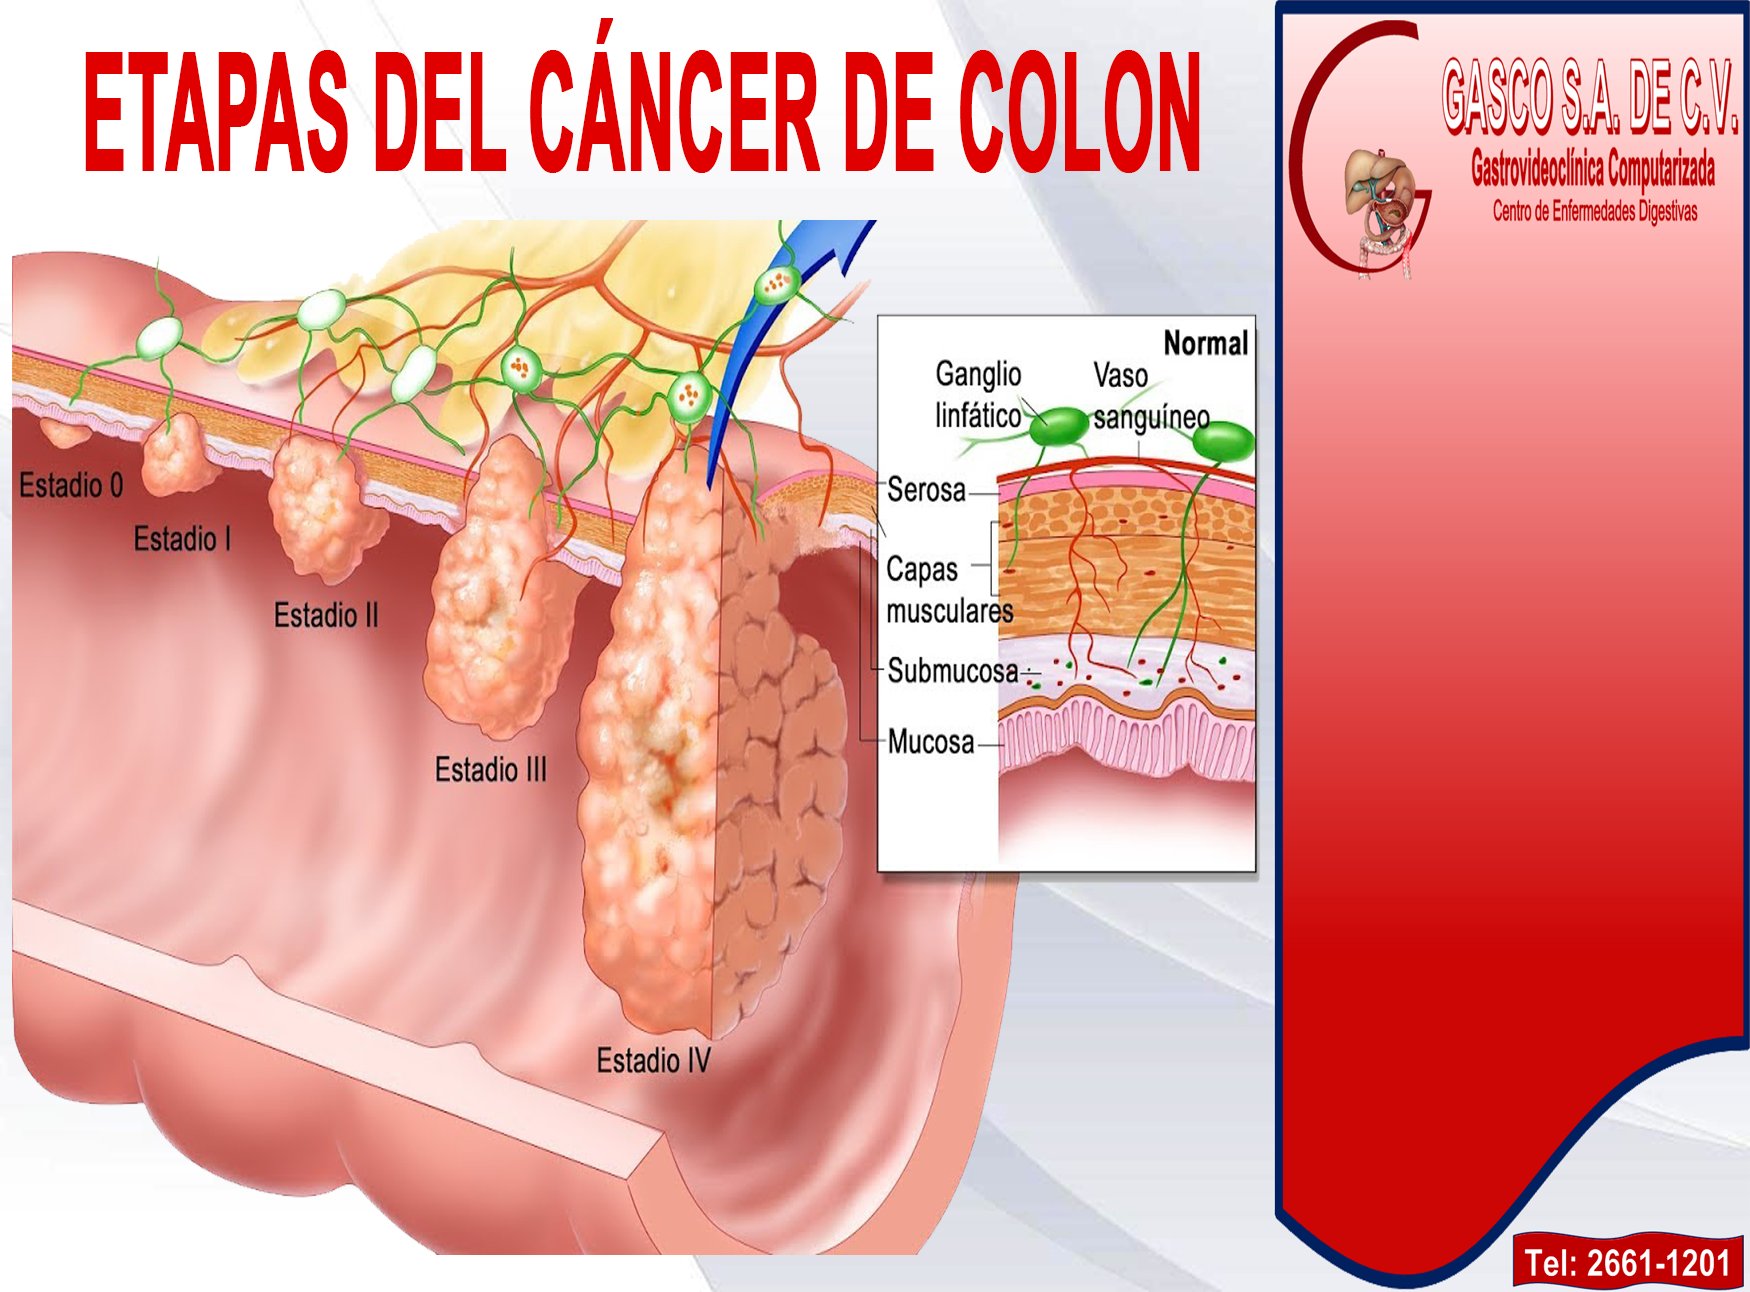 Cancer de colon bulto en el ano - Cancer de colon con ganglios afectados